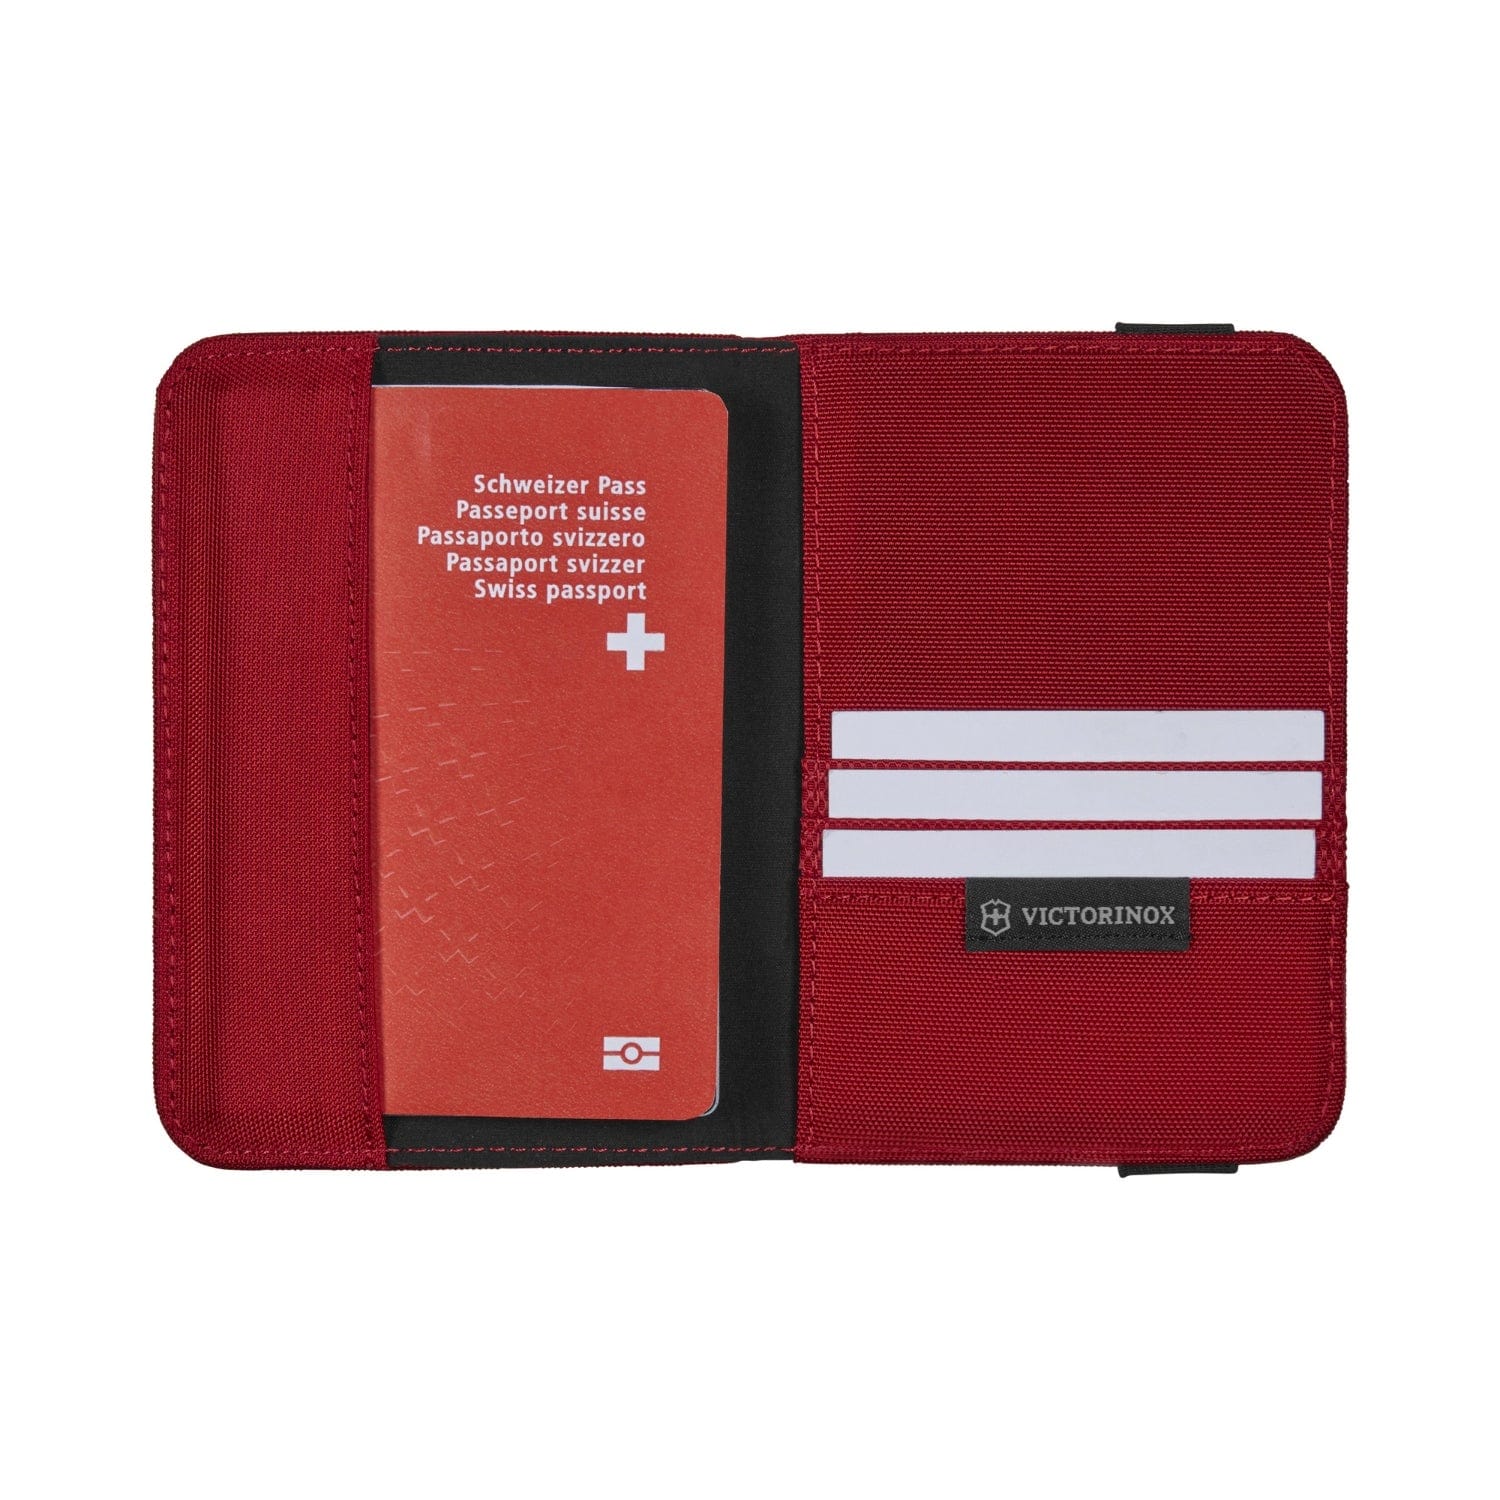 Victorinox Travel Accessories 5.0 Passport Holder